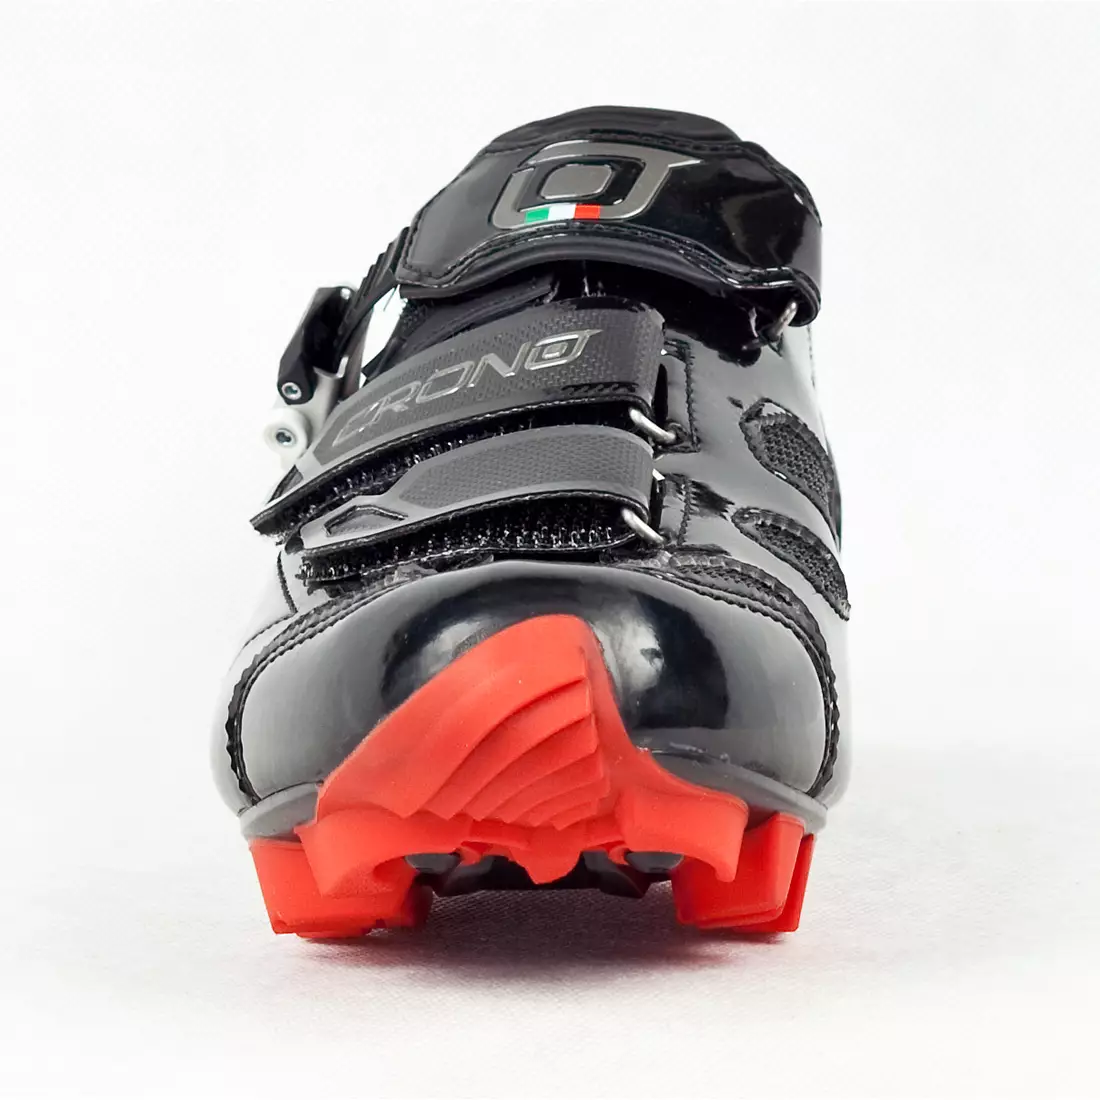 CRONO TRACK - Pantofi de ciclism MTB - culoare: Negru